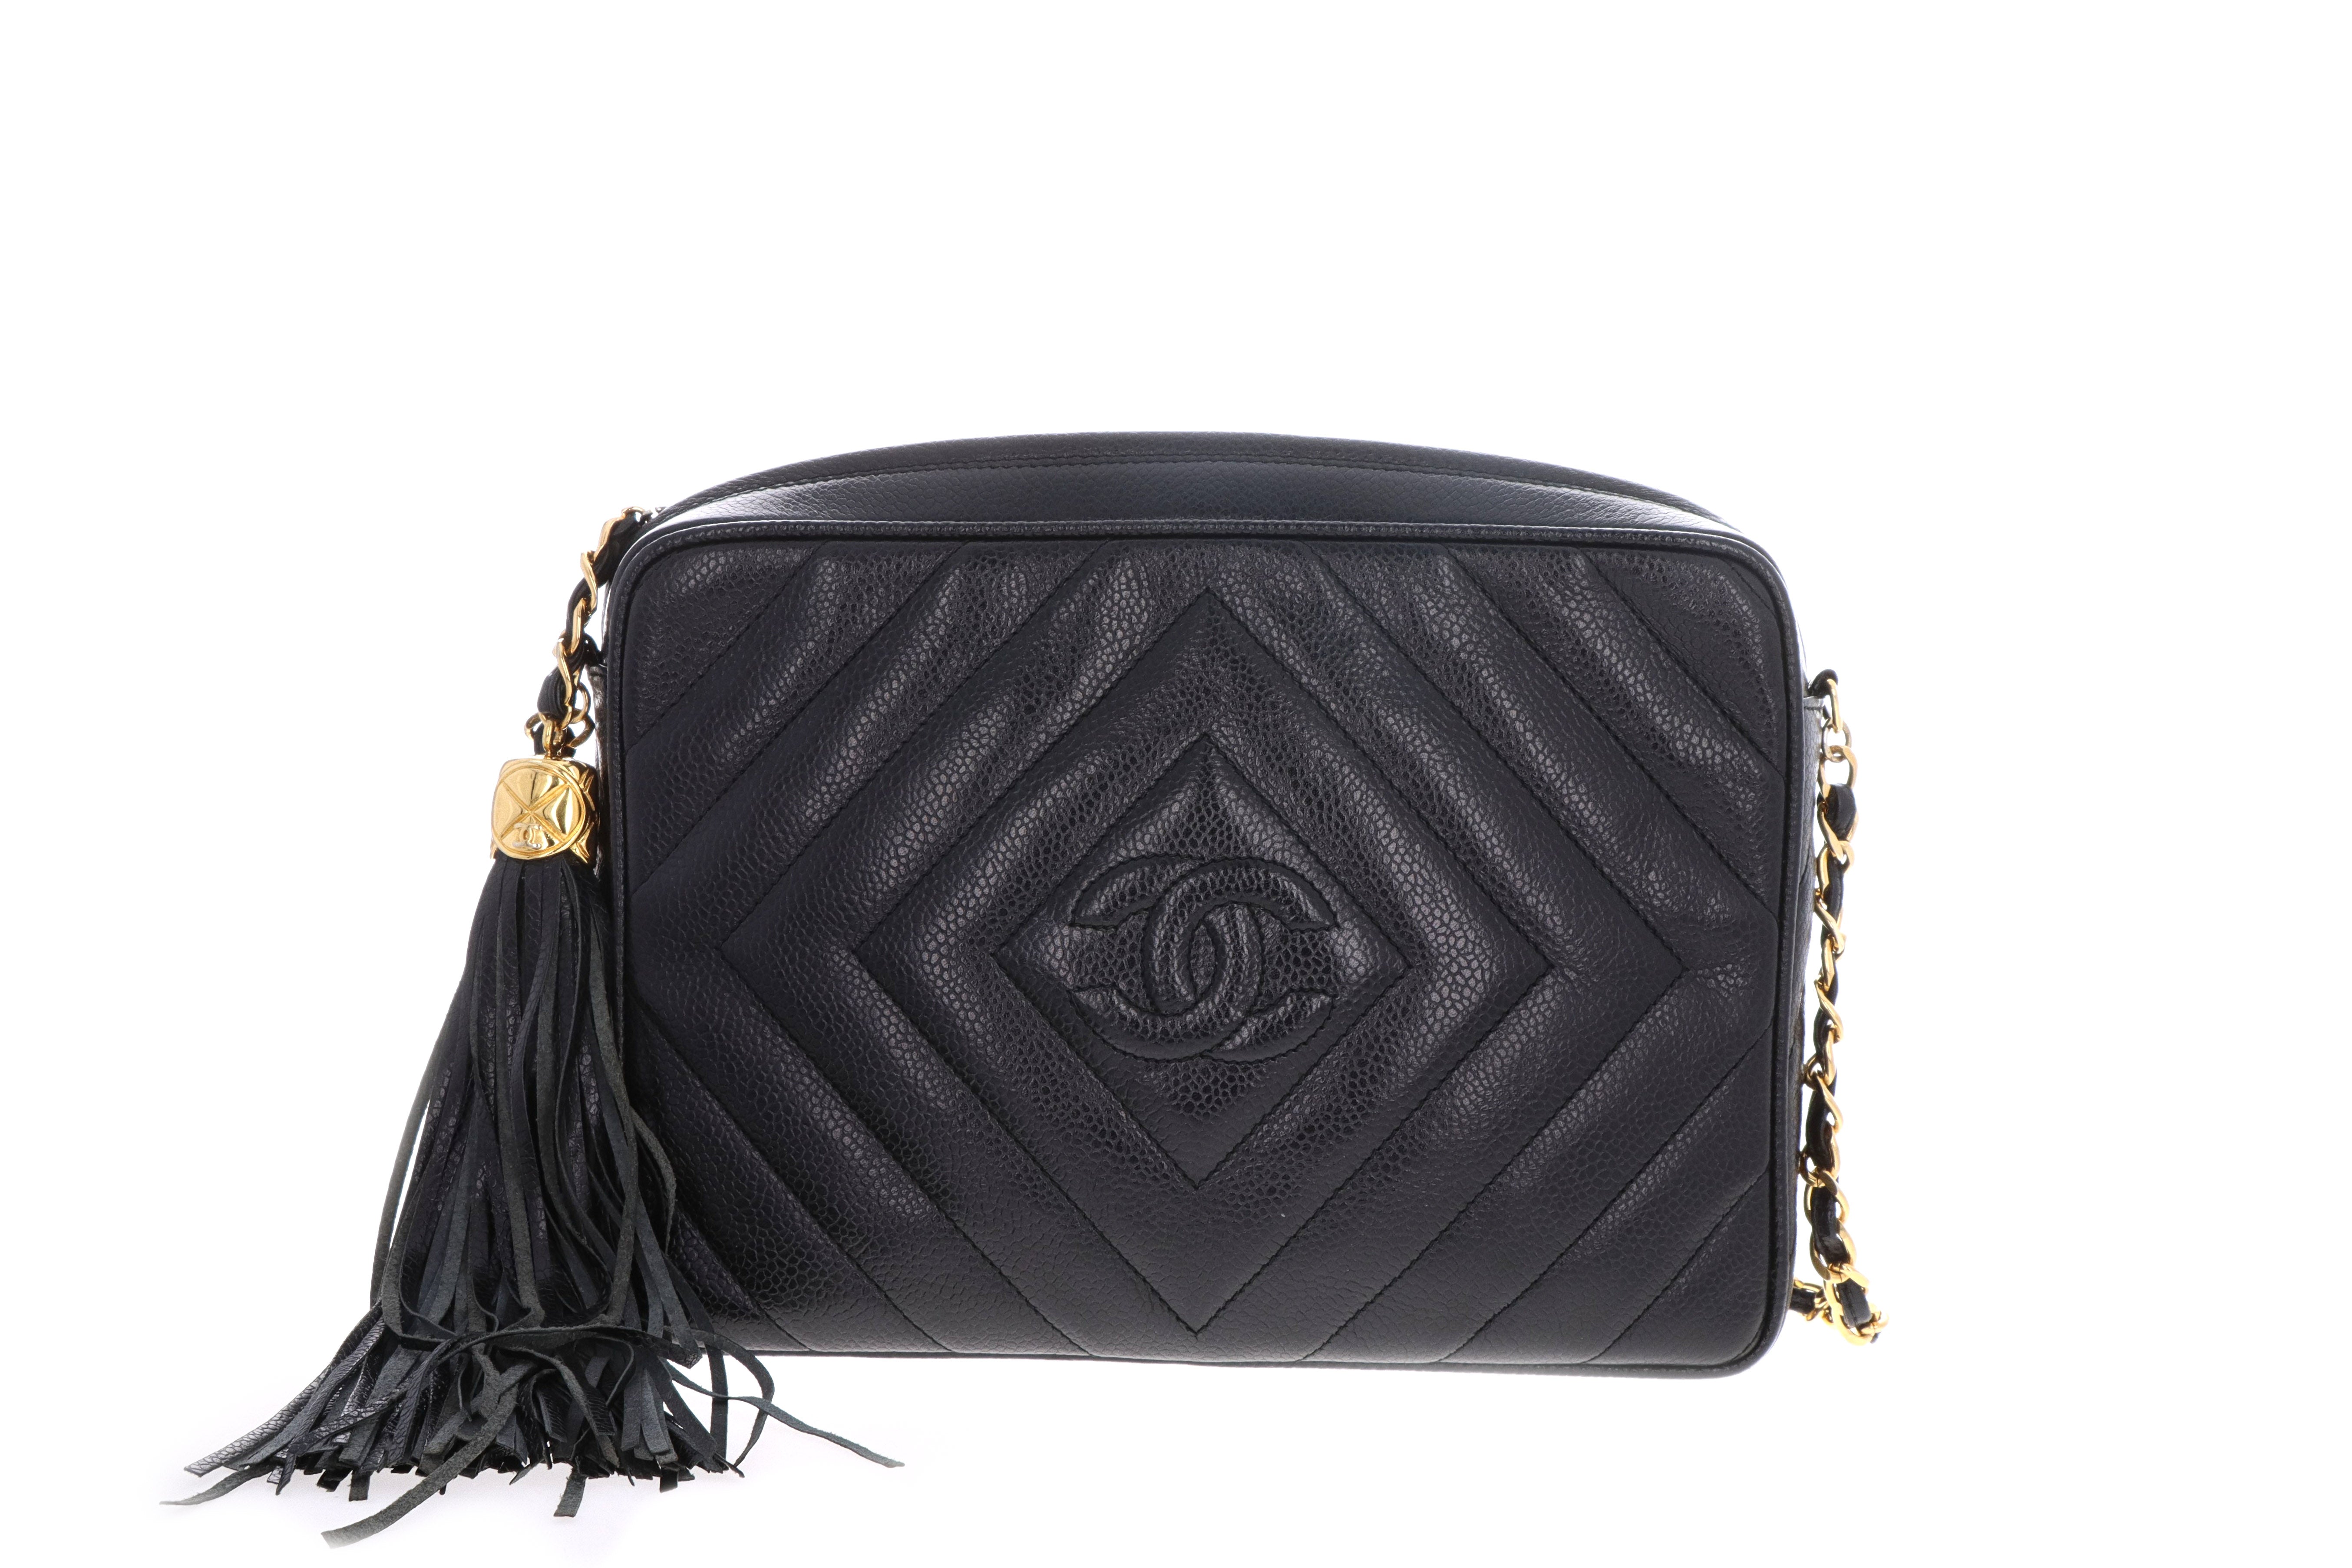 Chanel Black Chevron Leather Vintage Tassel Camera Shoulder Bag